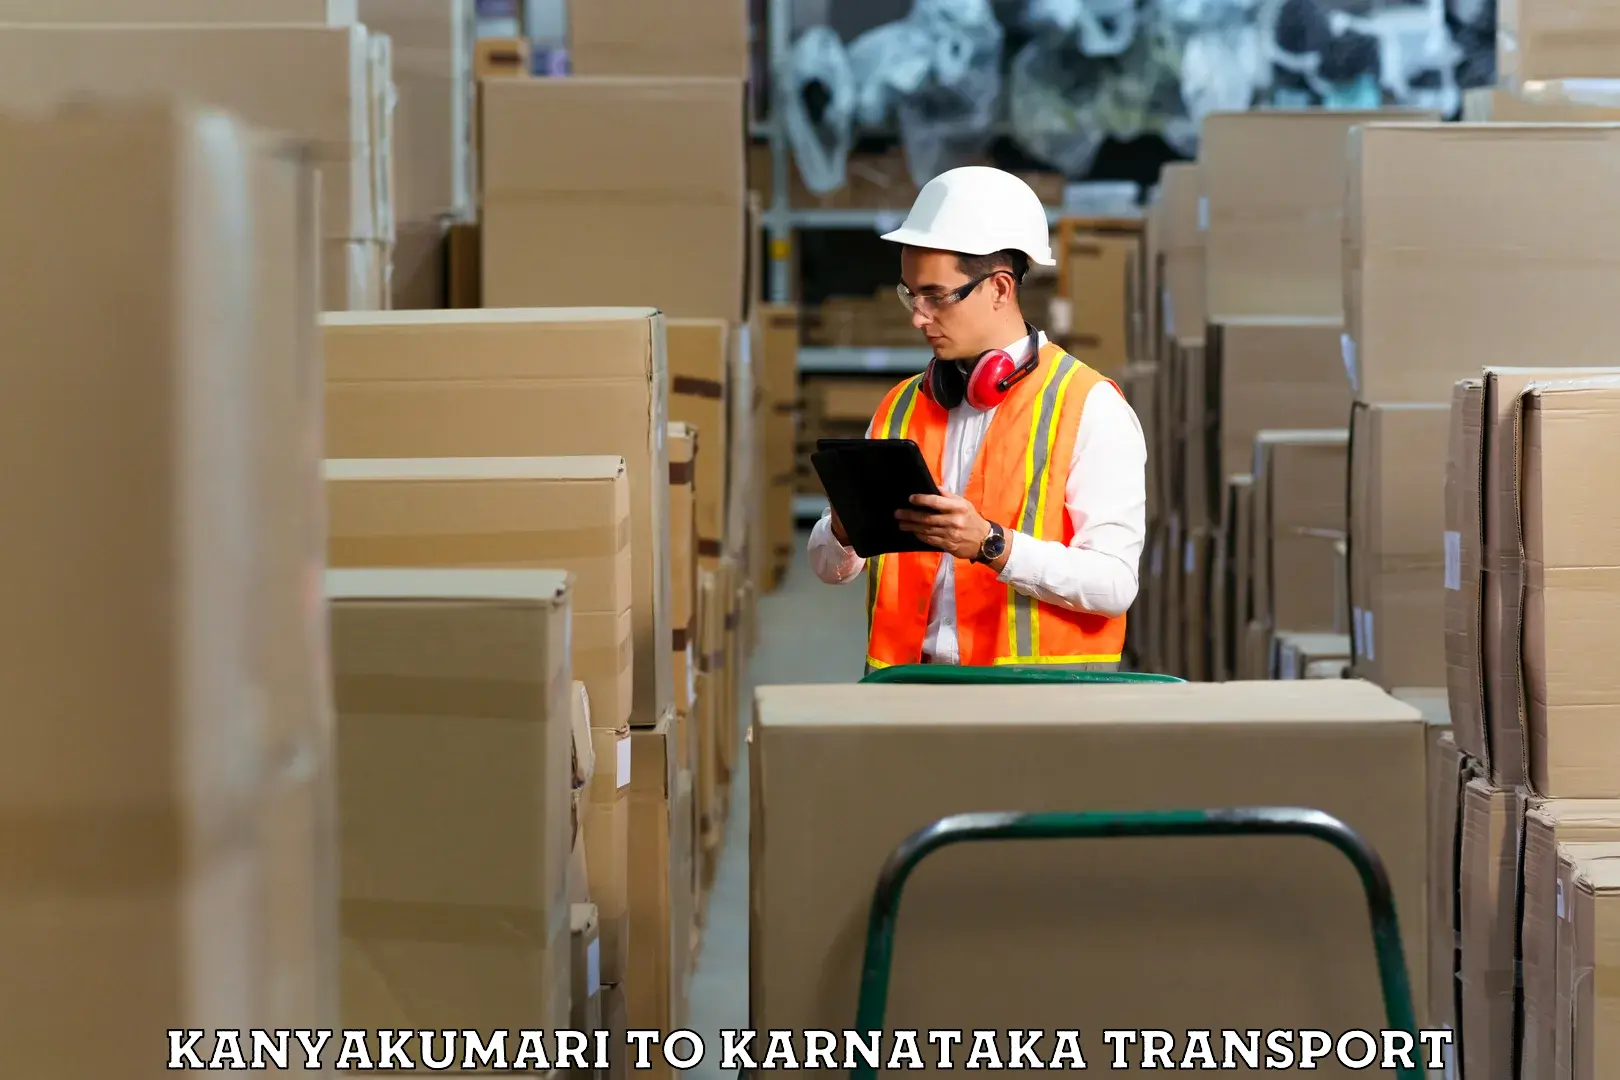 Shipping partner Kanyakumari to Byadagi